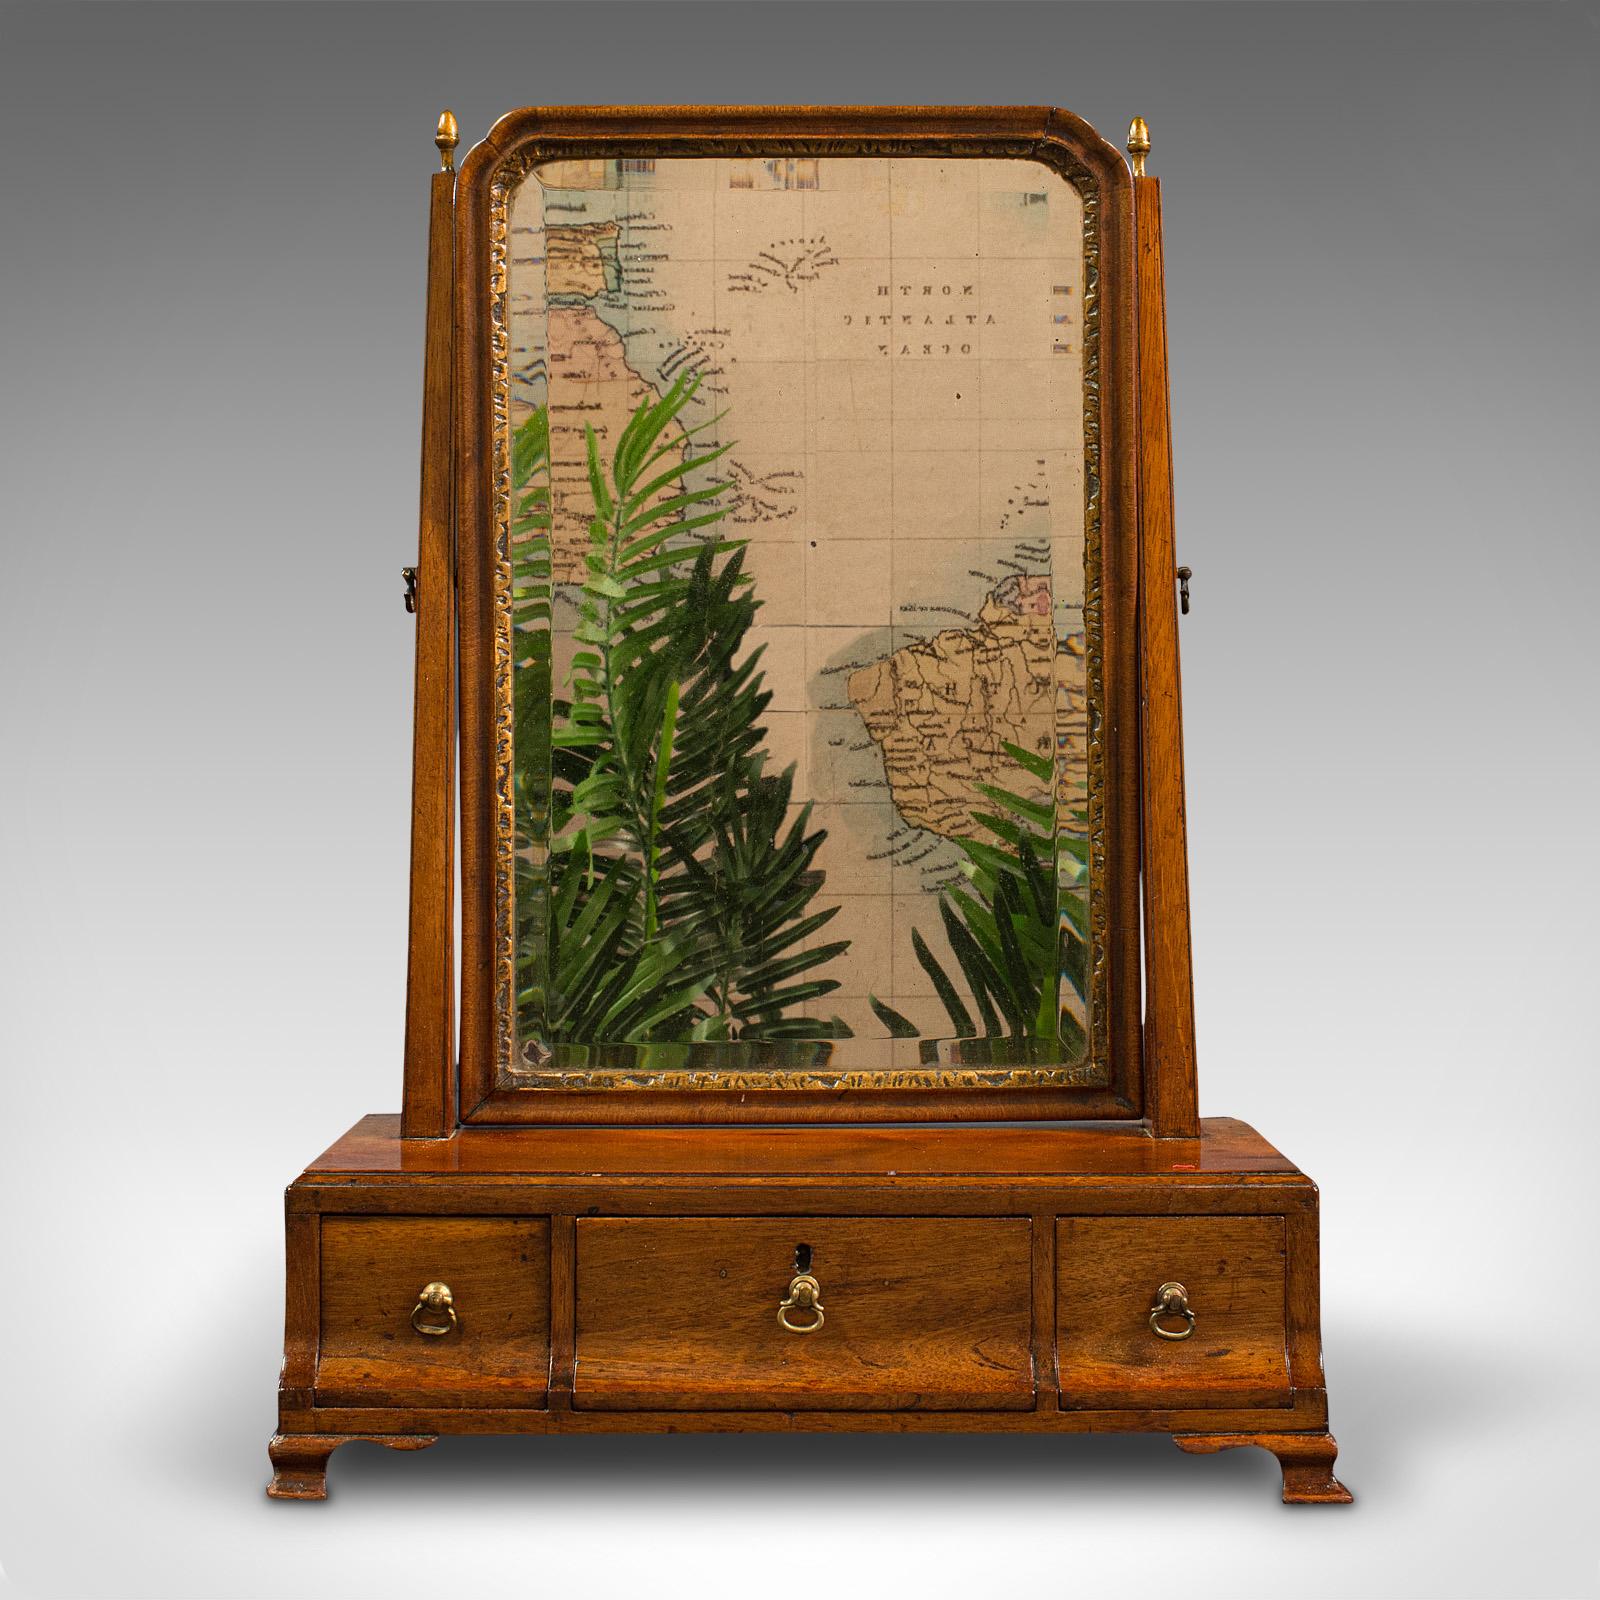 Il s'agit d'un miroir de bureau ancien. Coiffeuse ou miroir pivotant anglais en noyer, datant de la période géorgienne, vers 1800.

Miroir délicieusement travaillé, aux couleurs et aux finitions raffinées
Présente une patine d'usage désirable et